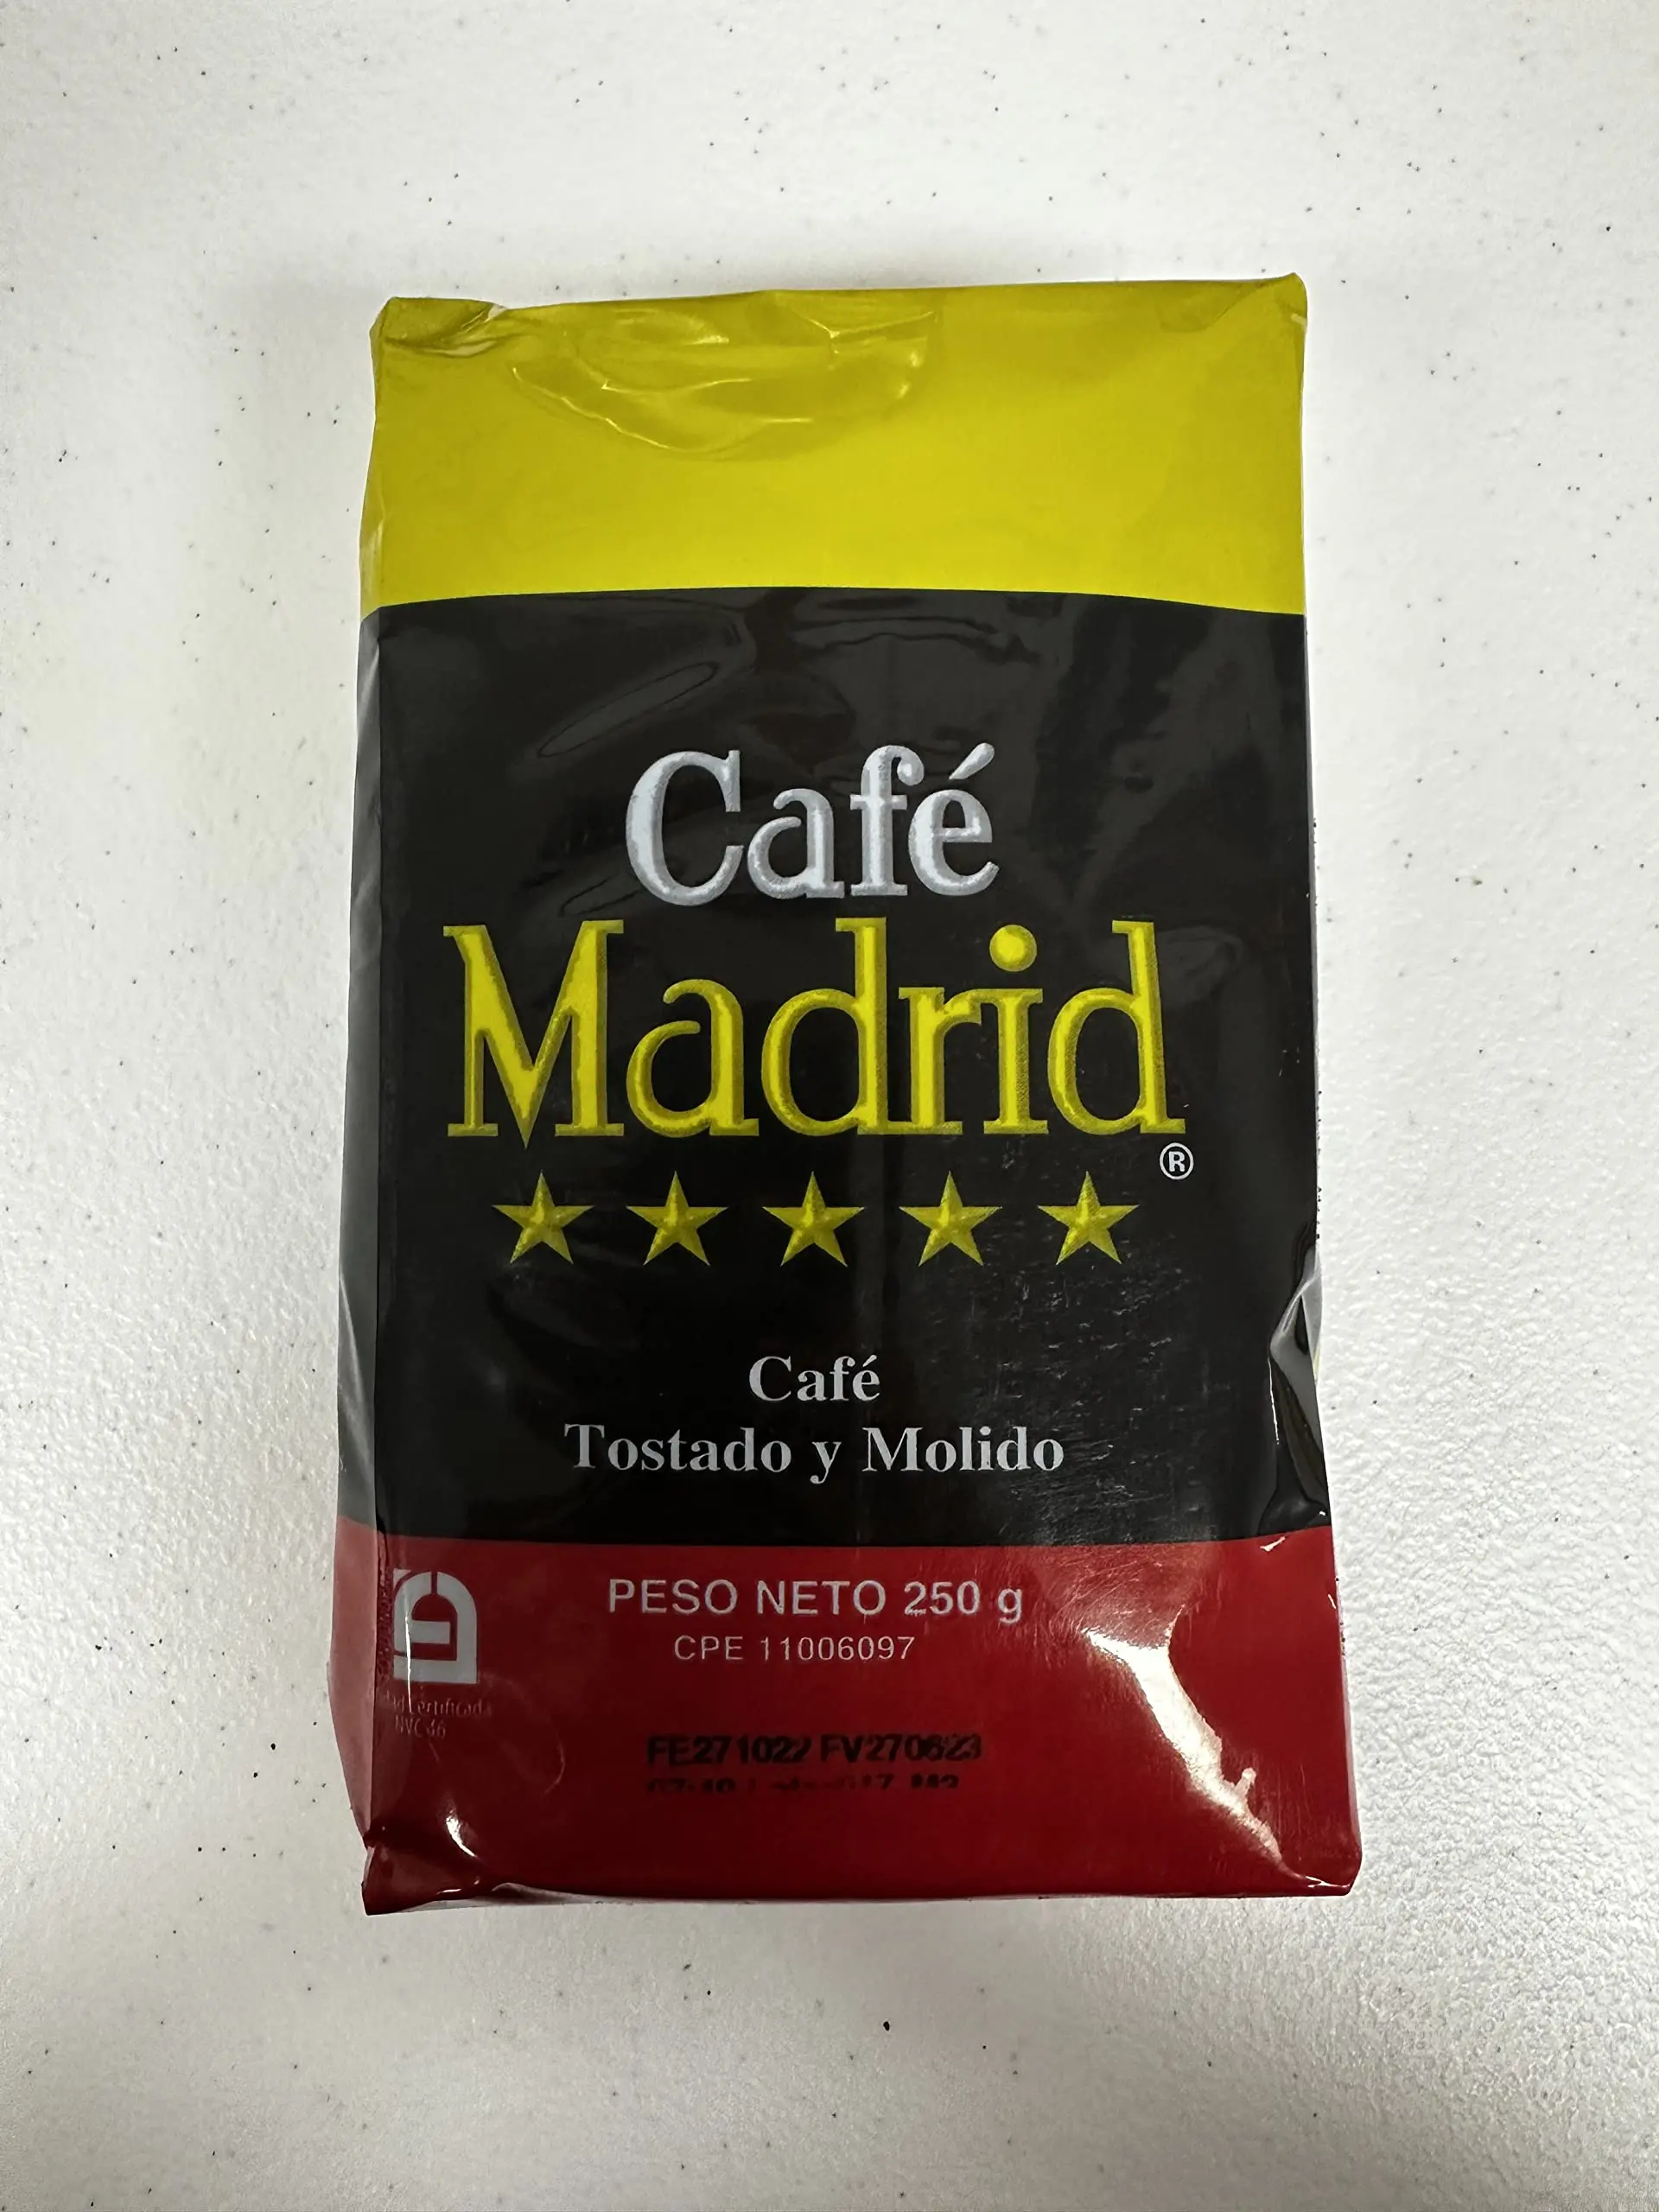 cafe madrid - Qué es el café Club